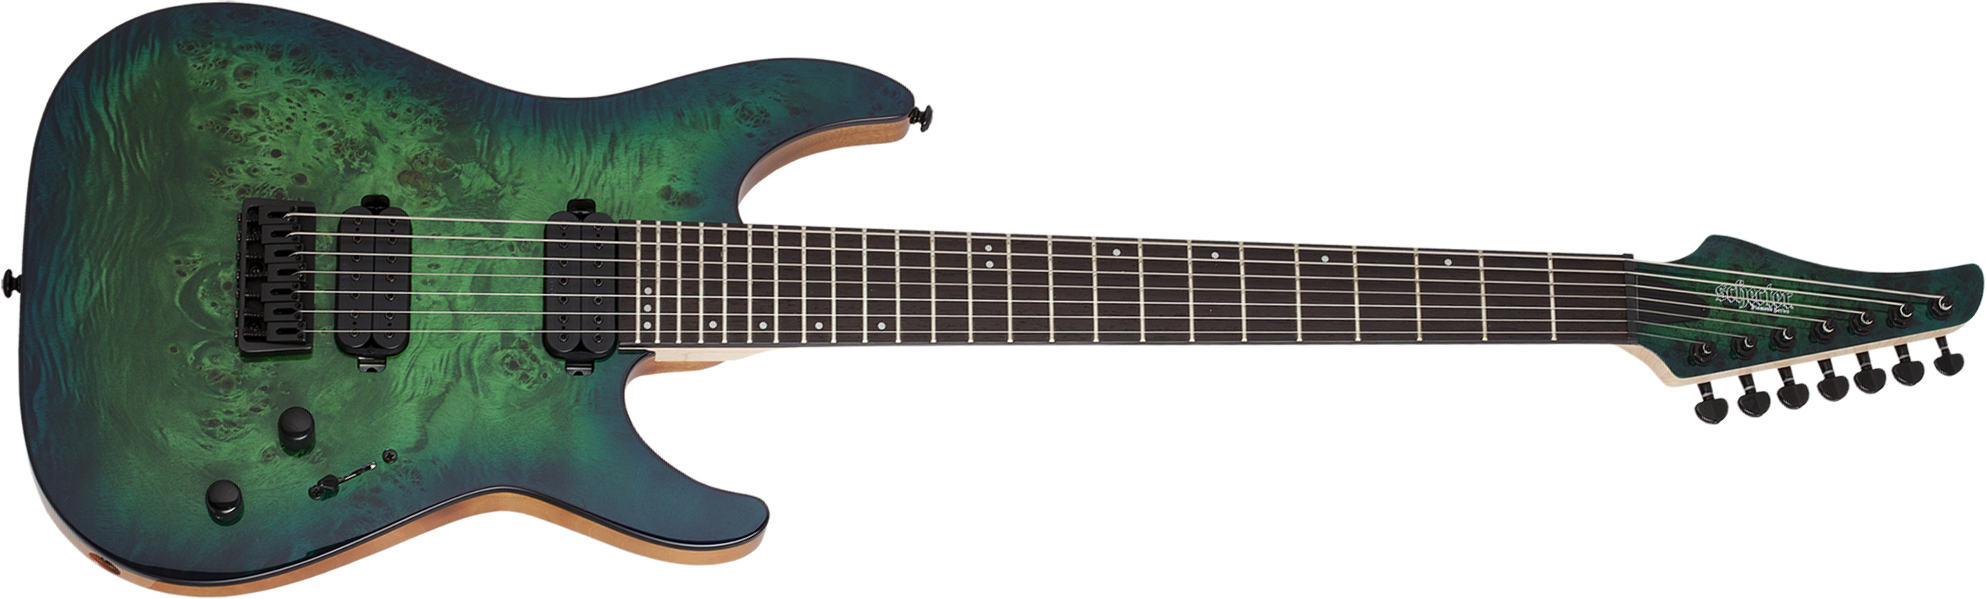 Schecter C-7 Pro 7c 2h Ht Wen - Aqua Burst - 7 string electric guitar - Main picture